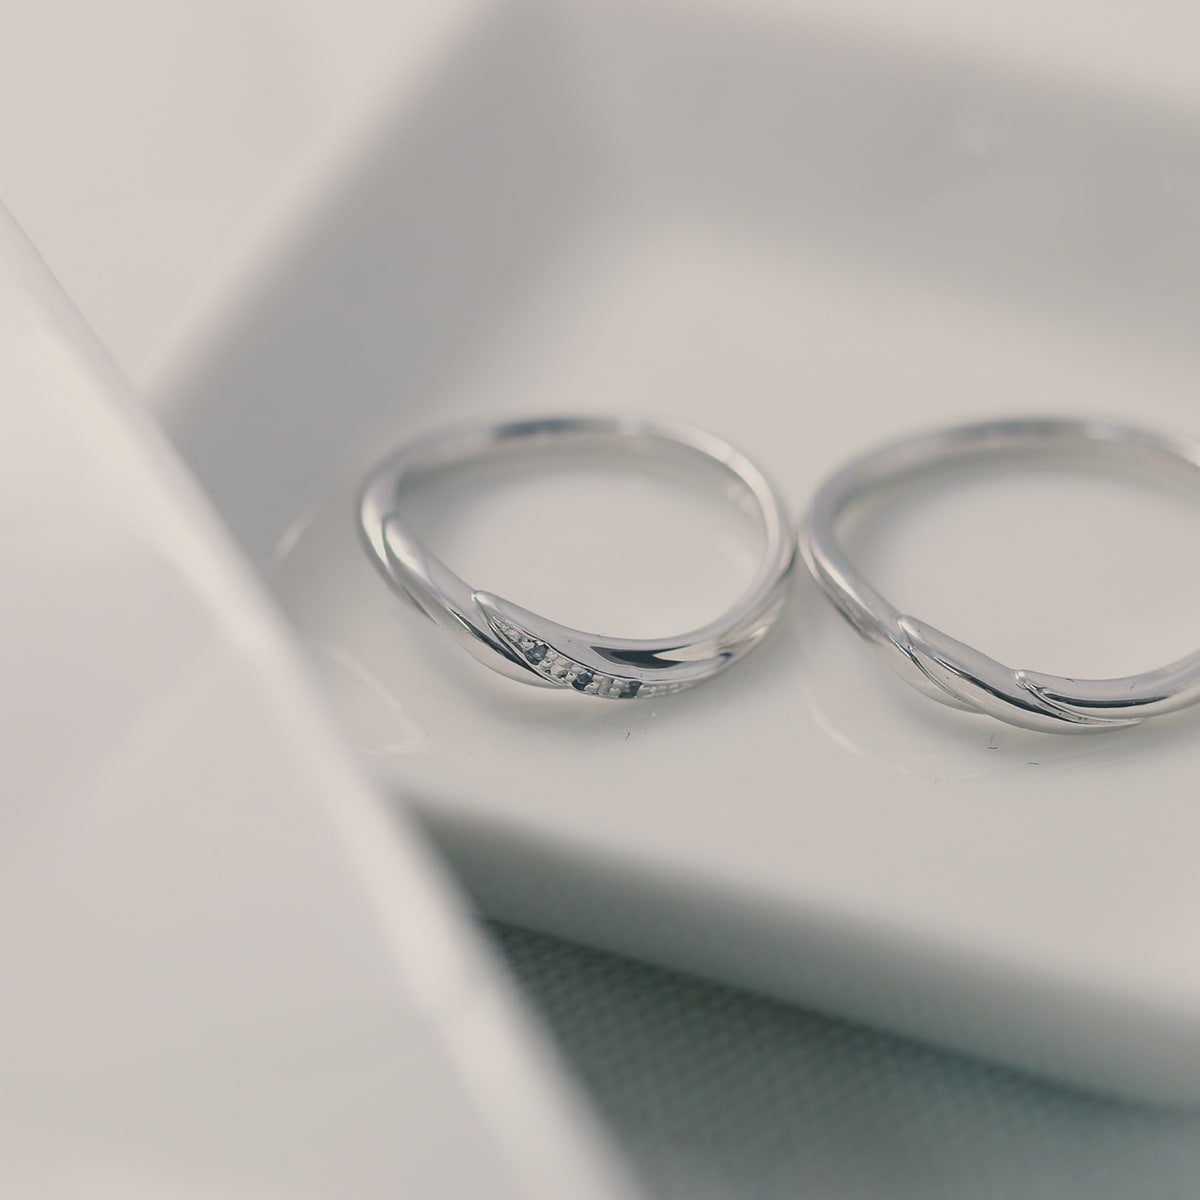 結婚指輪 ダイヤモンド 2本セット | 30406-30405